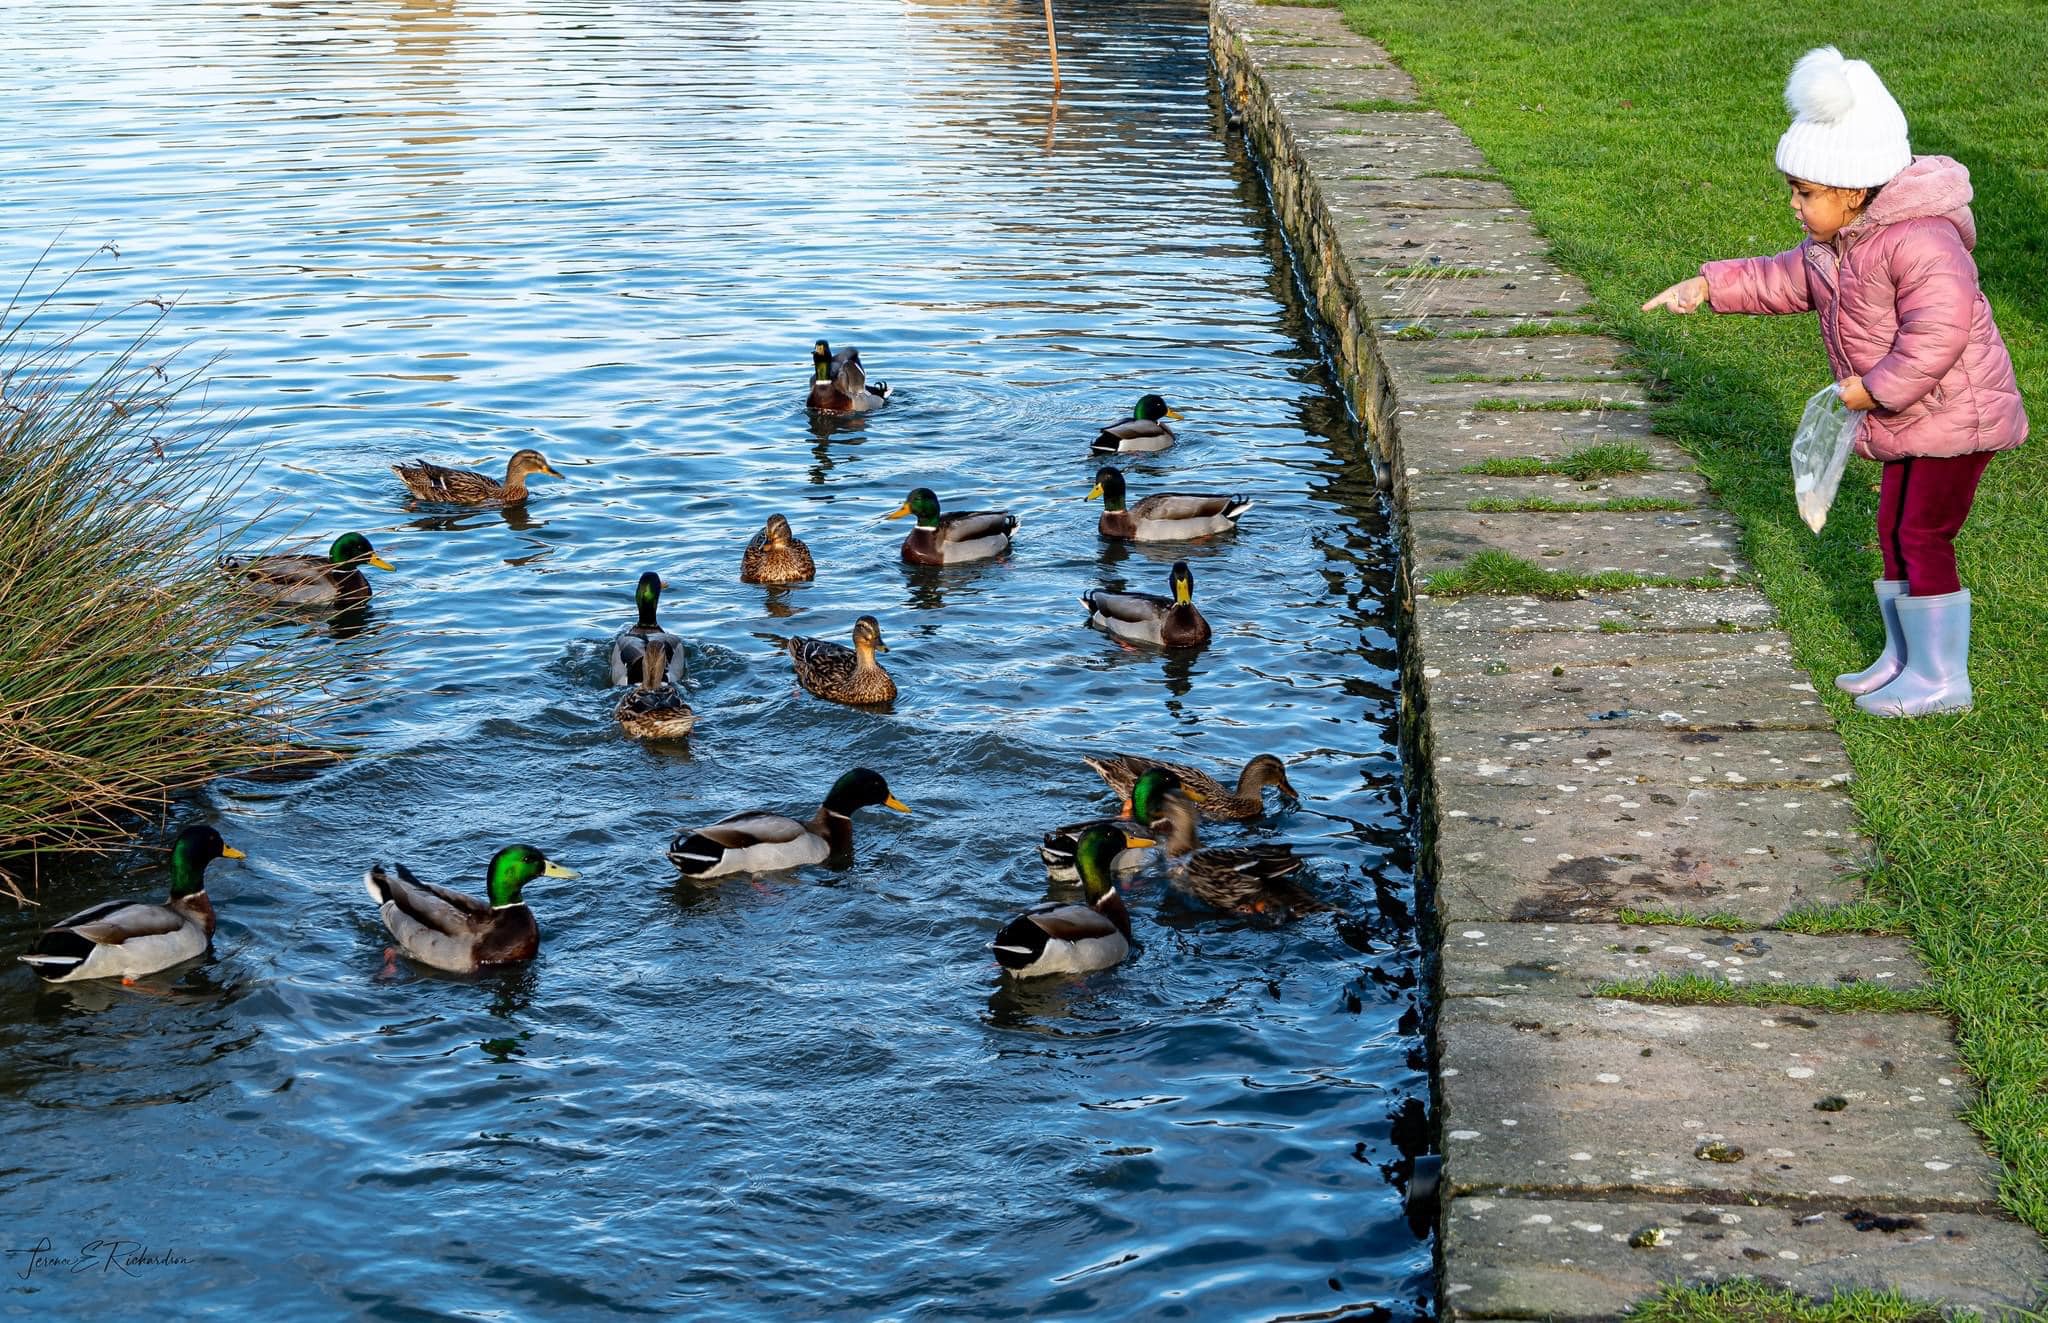 Child feeding ducks at Willersey pond